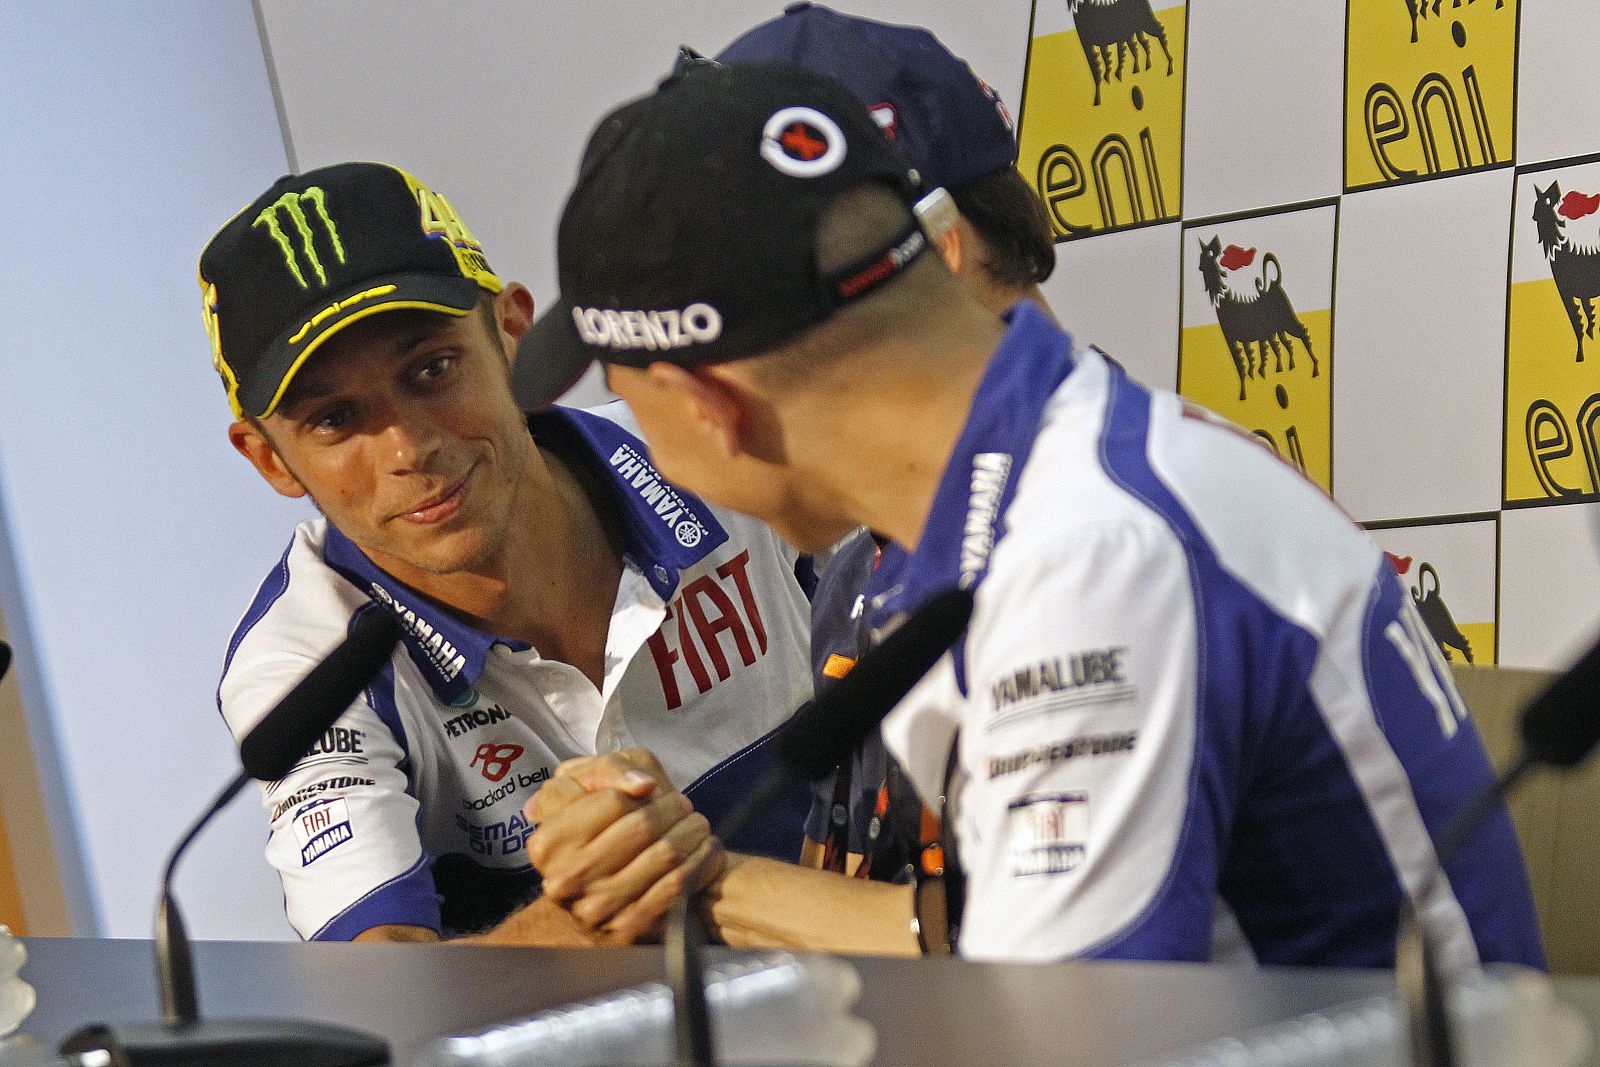 Apenas un día ha durado la cordialidad entre Rossi y Lorenzo.